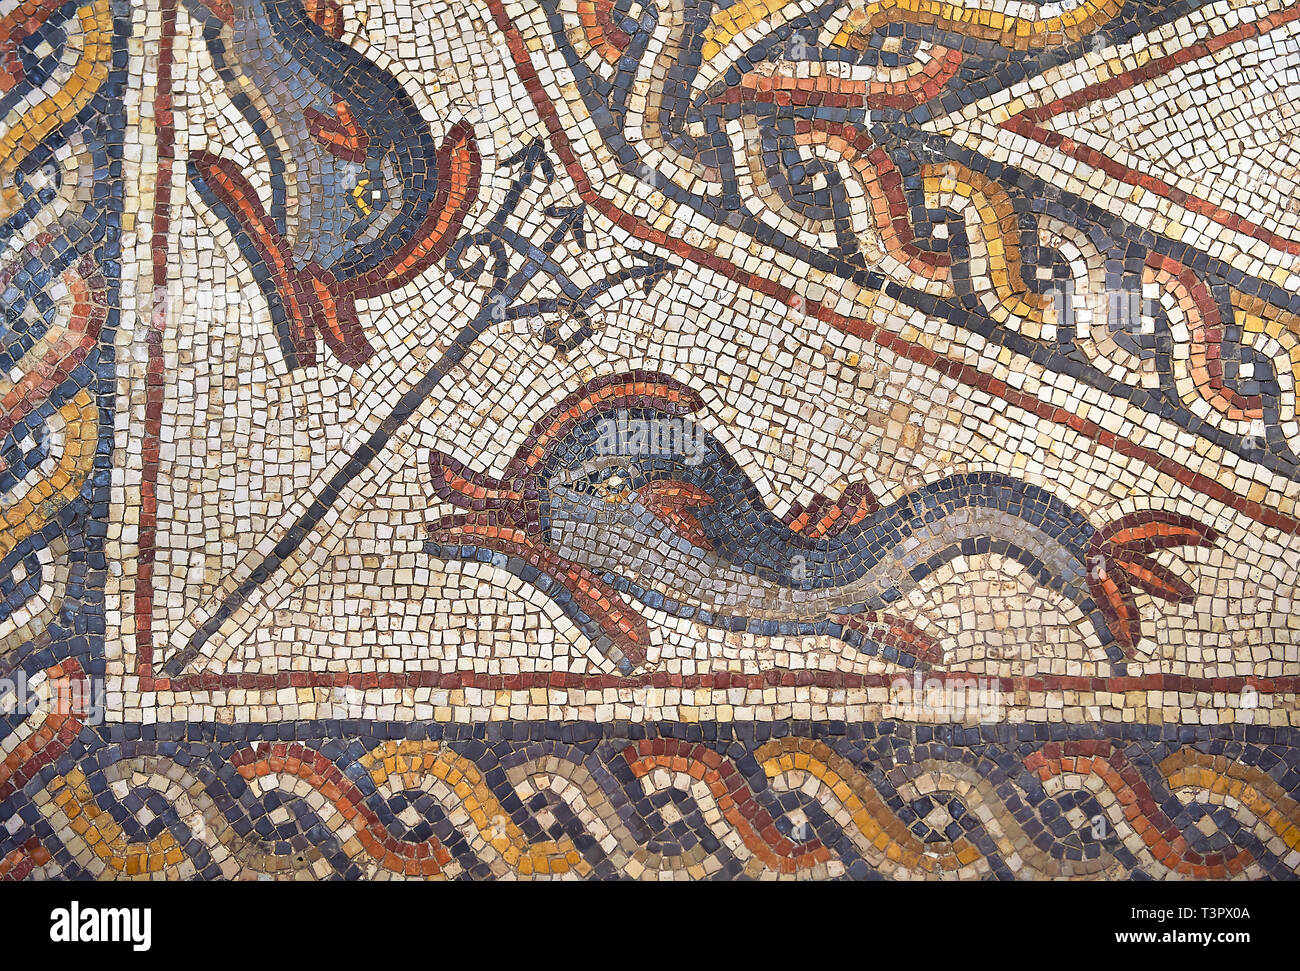 Le poisson de la 3e siècle mosaïque romaine villa étage de Lod, près de Tel Aviv, Israël. La mosaïque romaine de Lod est le plus grand et le mieux préservé mo Banque D'Images